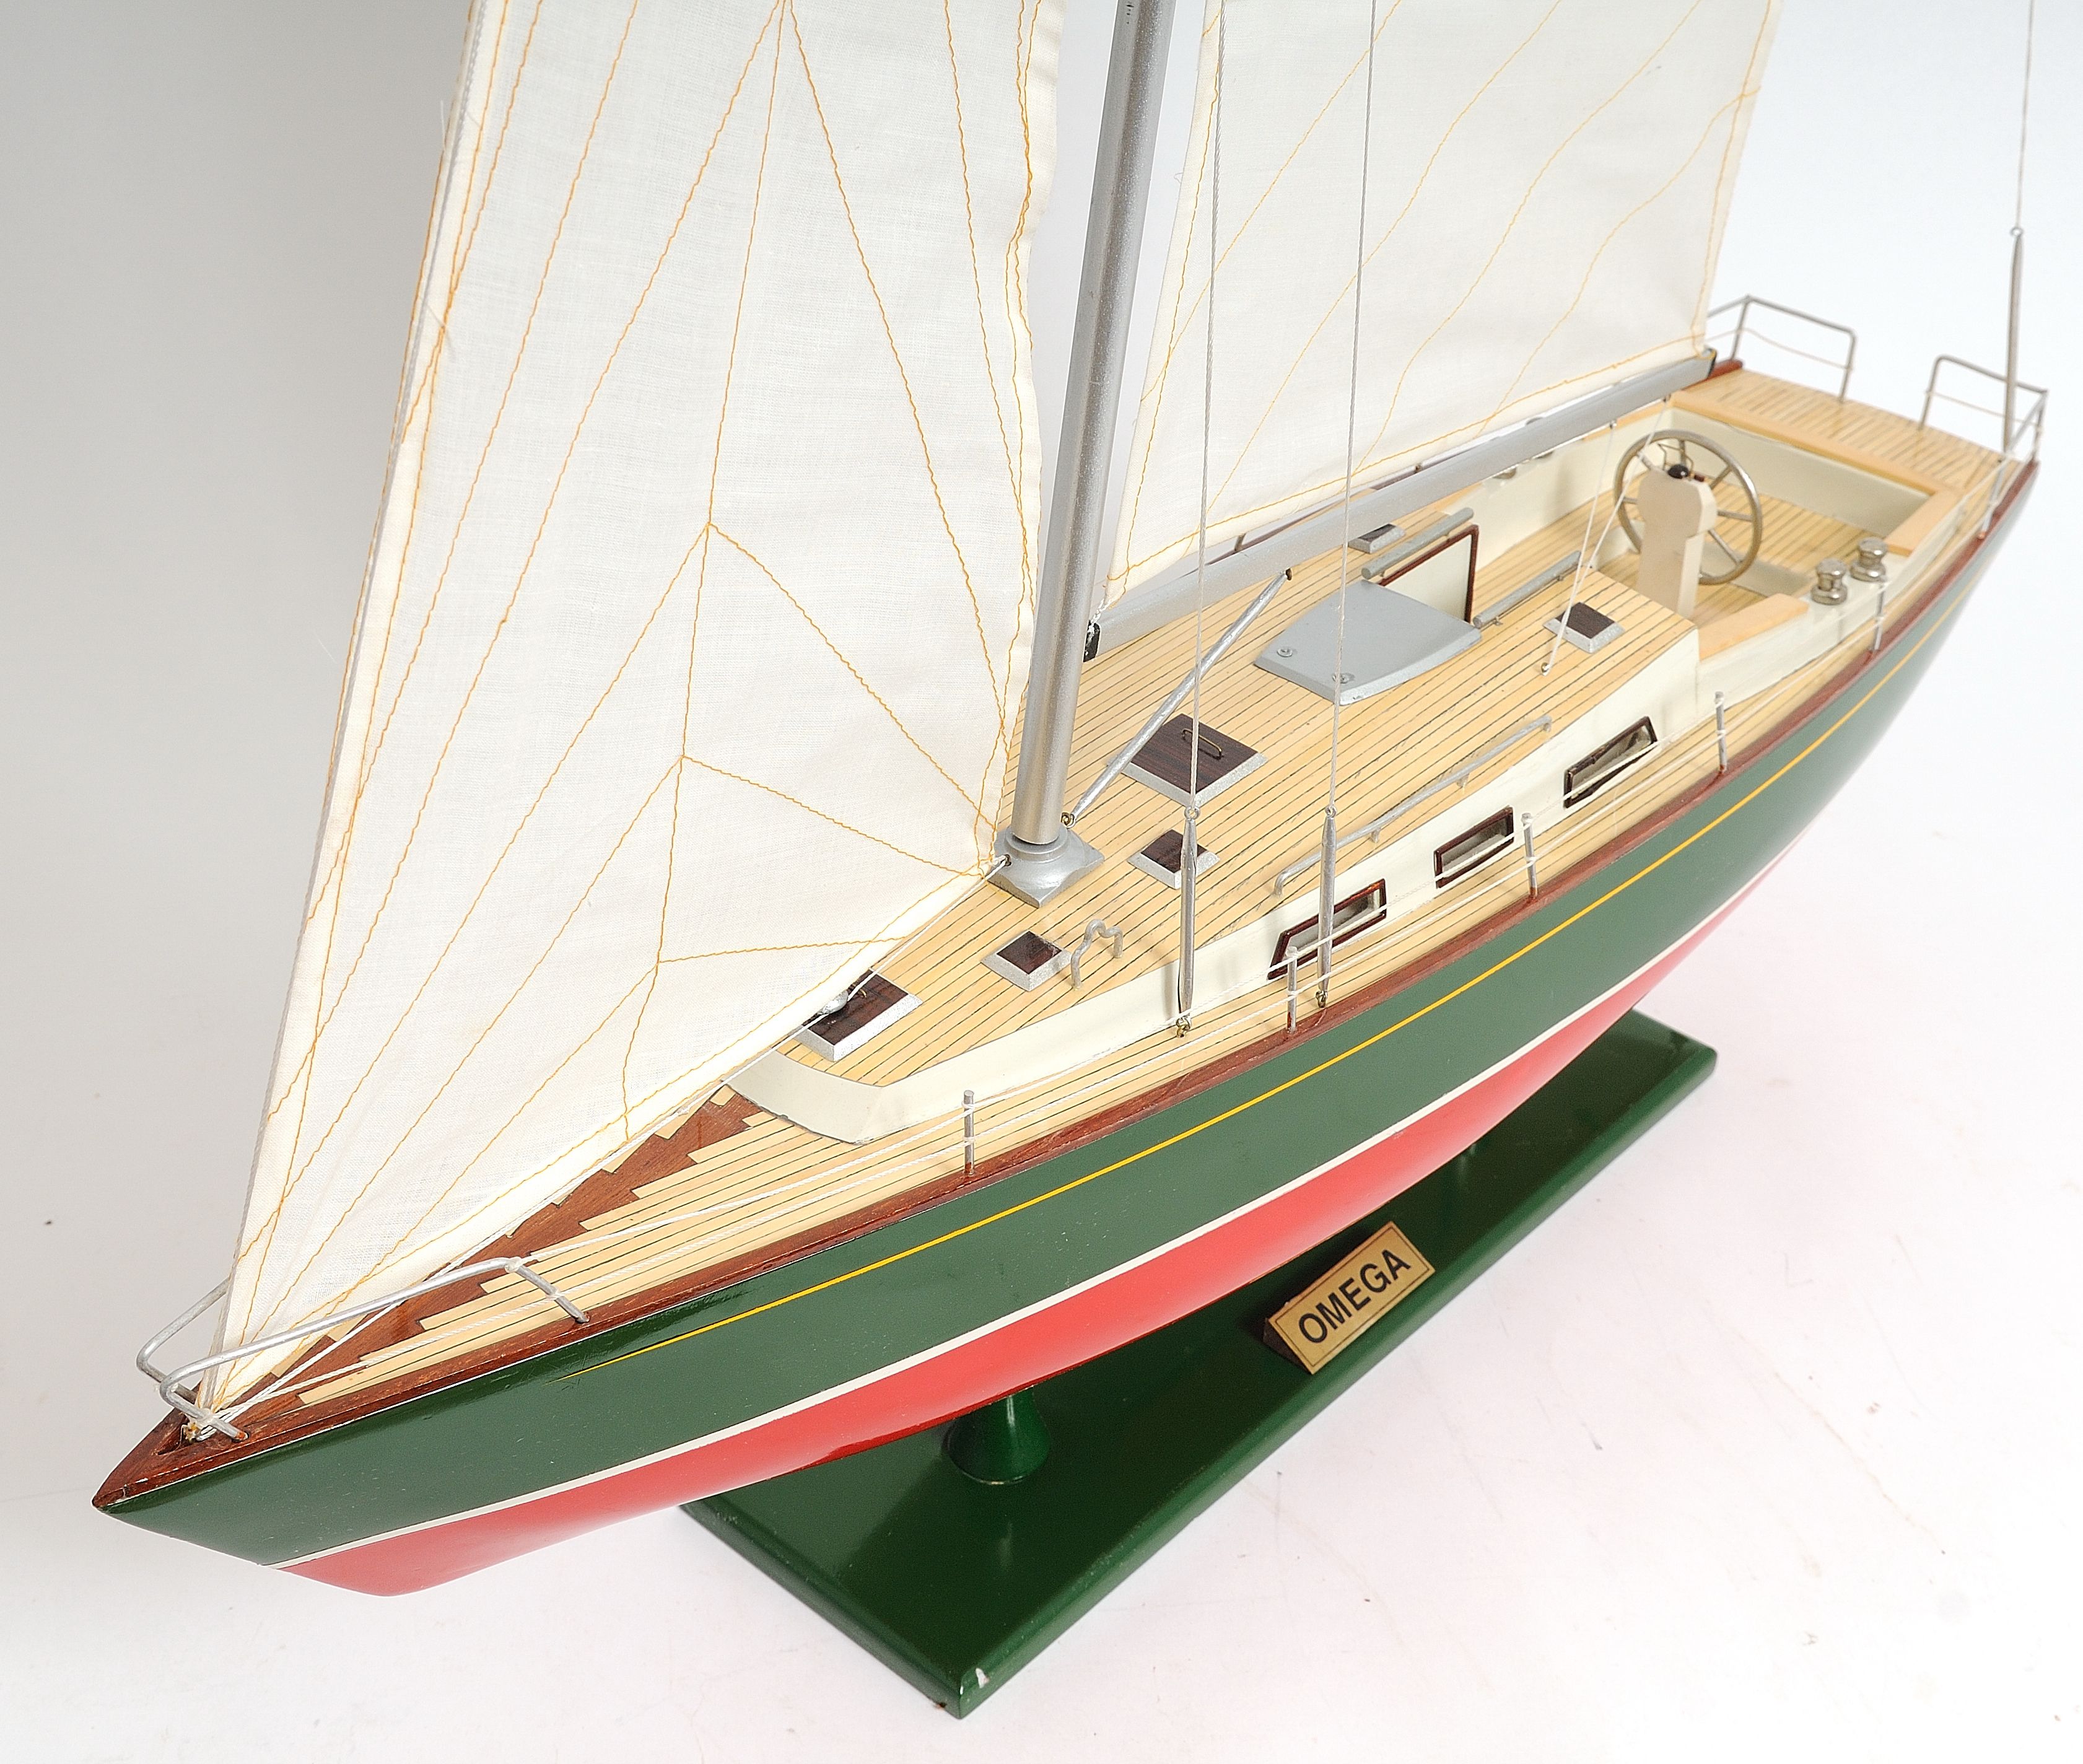 Omega 46 Wooden Model Boat - OMH - UK Premier ship Models